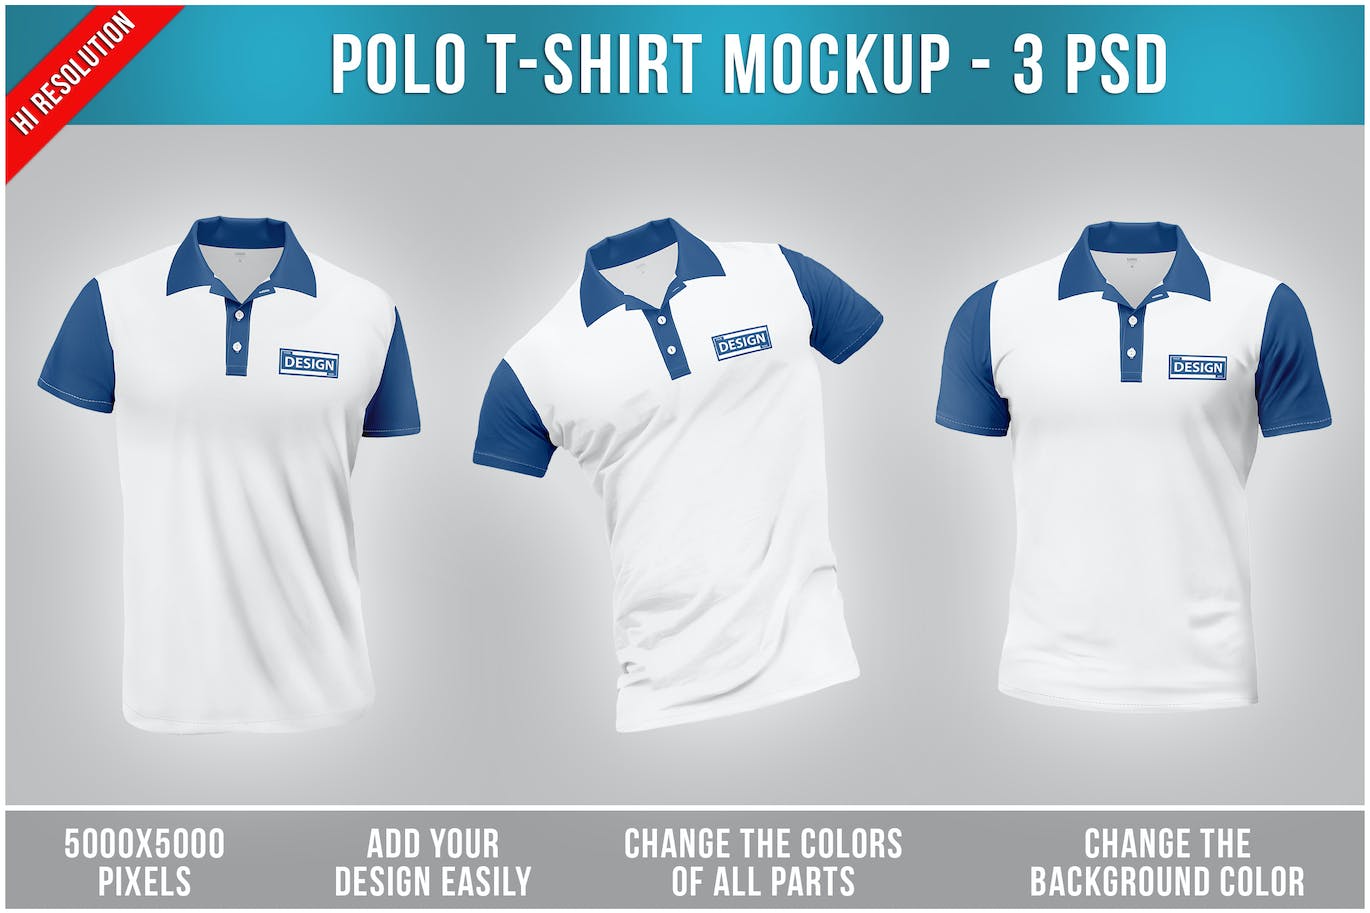 Polo T恤服装设计样机 Polo T-Shirt Mockup 样机素材 第1张